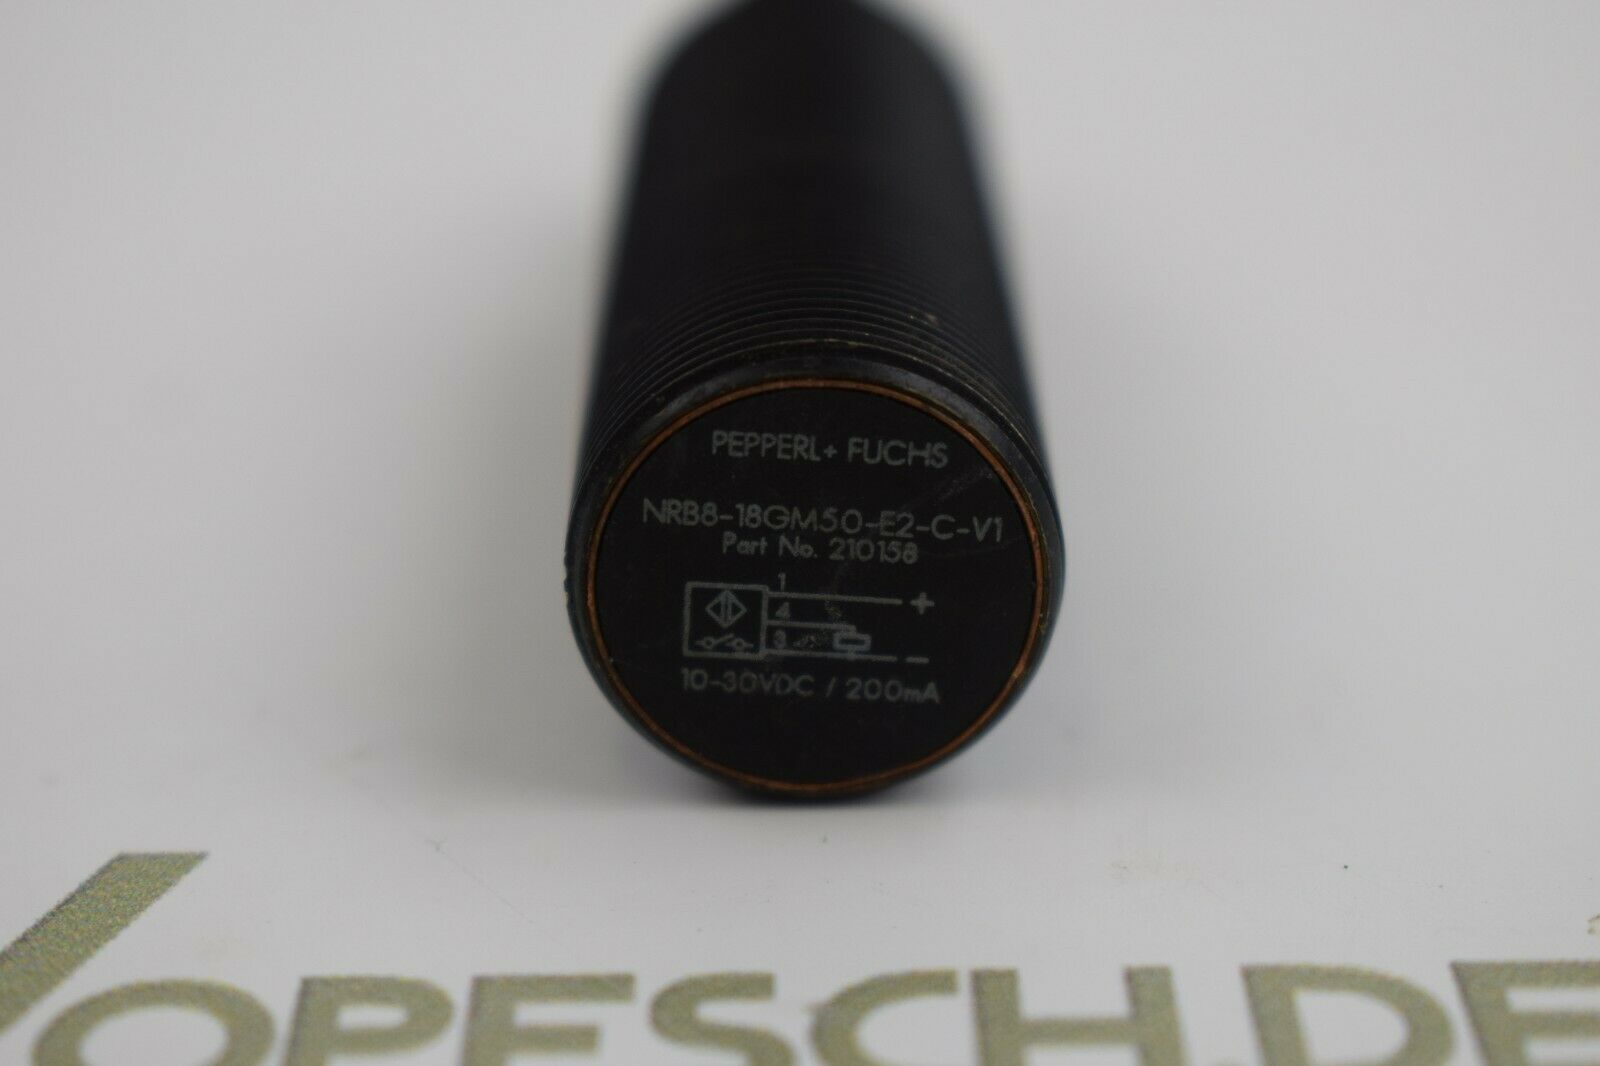 Pepperl+Fuchs Induktiver Sensor NRB8-18GM50-E2-C-V1 ( 210158 )